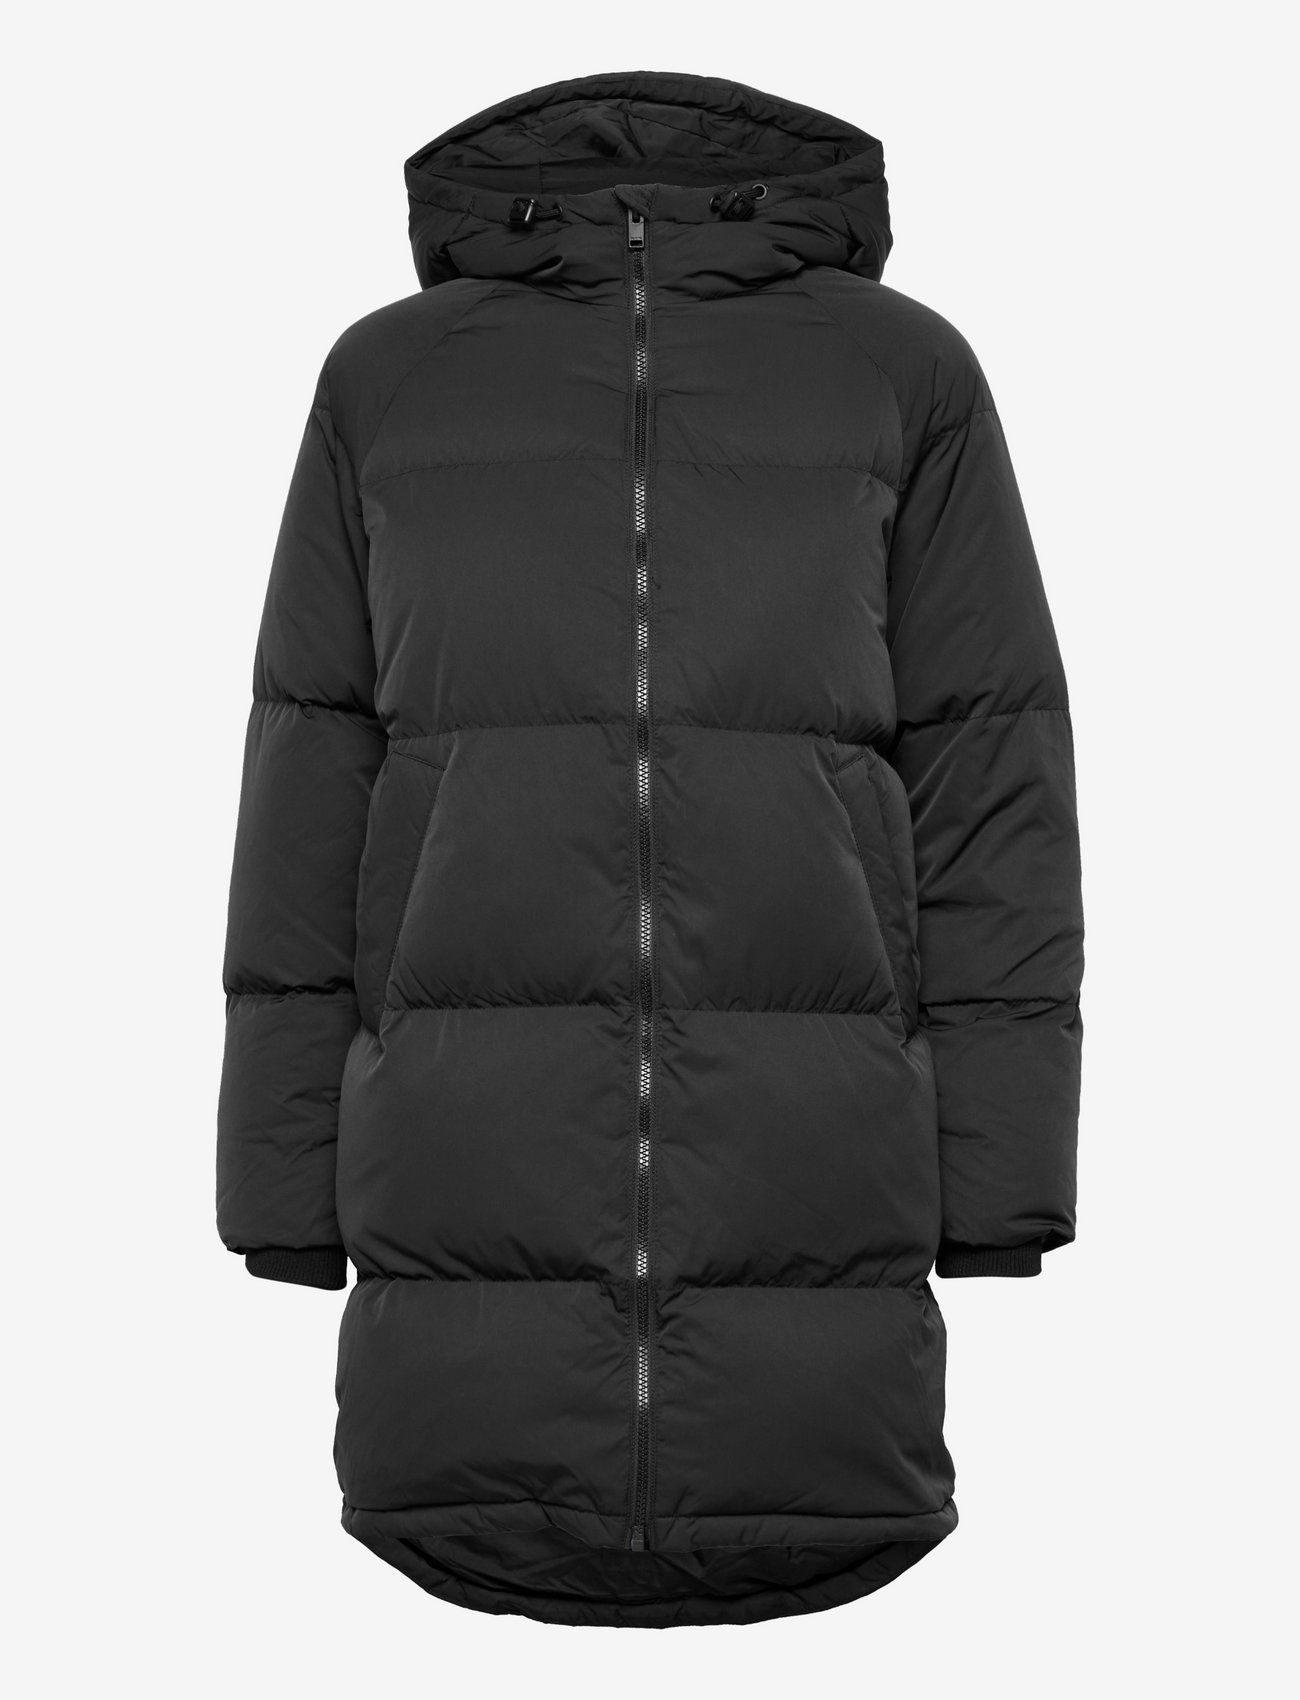 Selected Femme Down Jacket B (Black), 727.55 kr | af designer | Booztlet.com